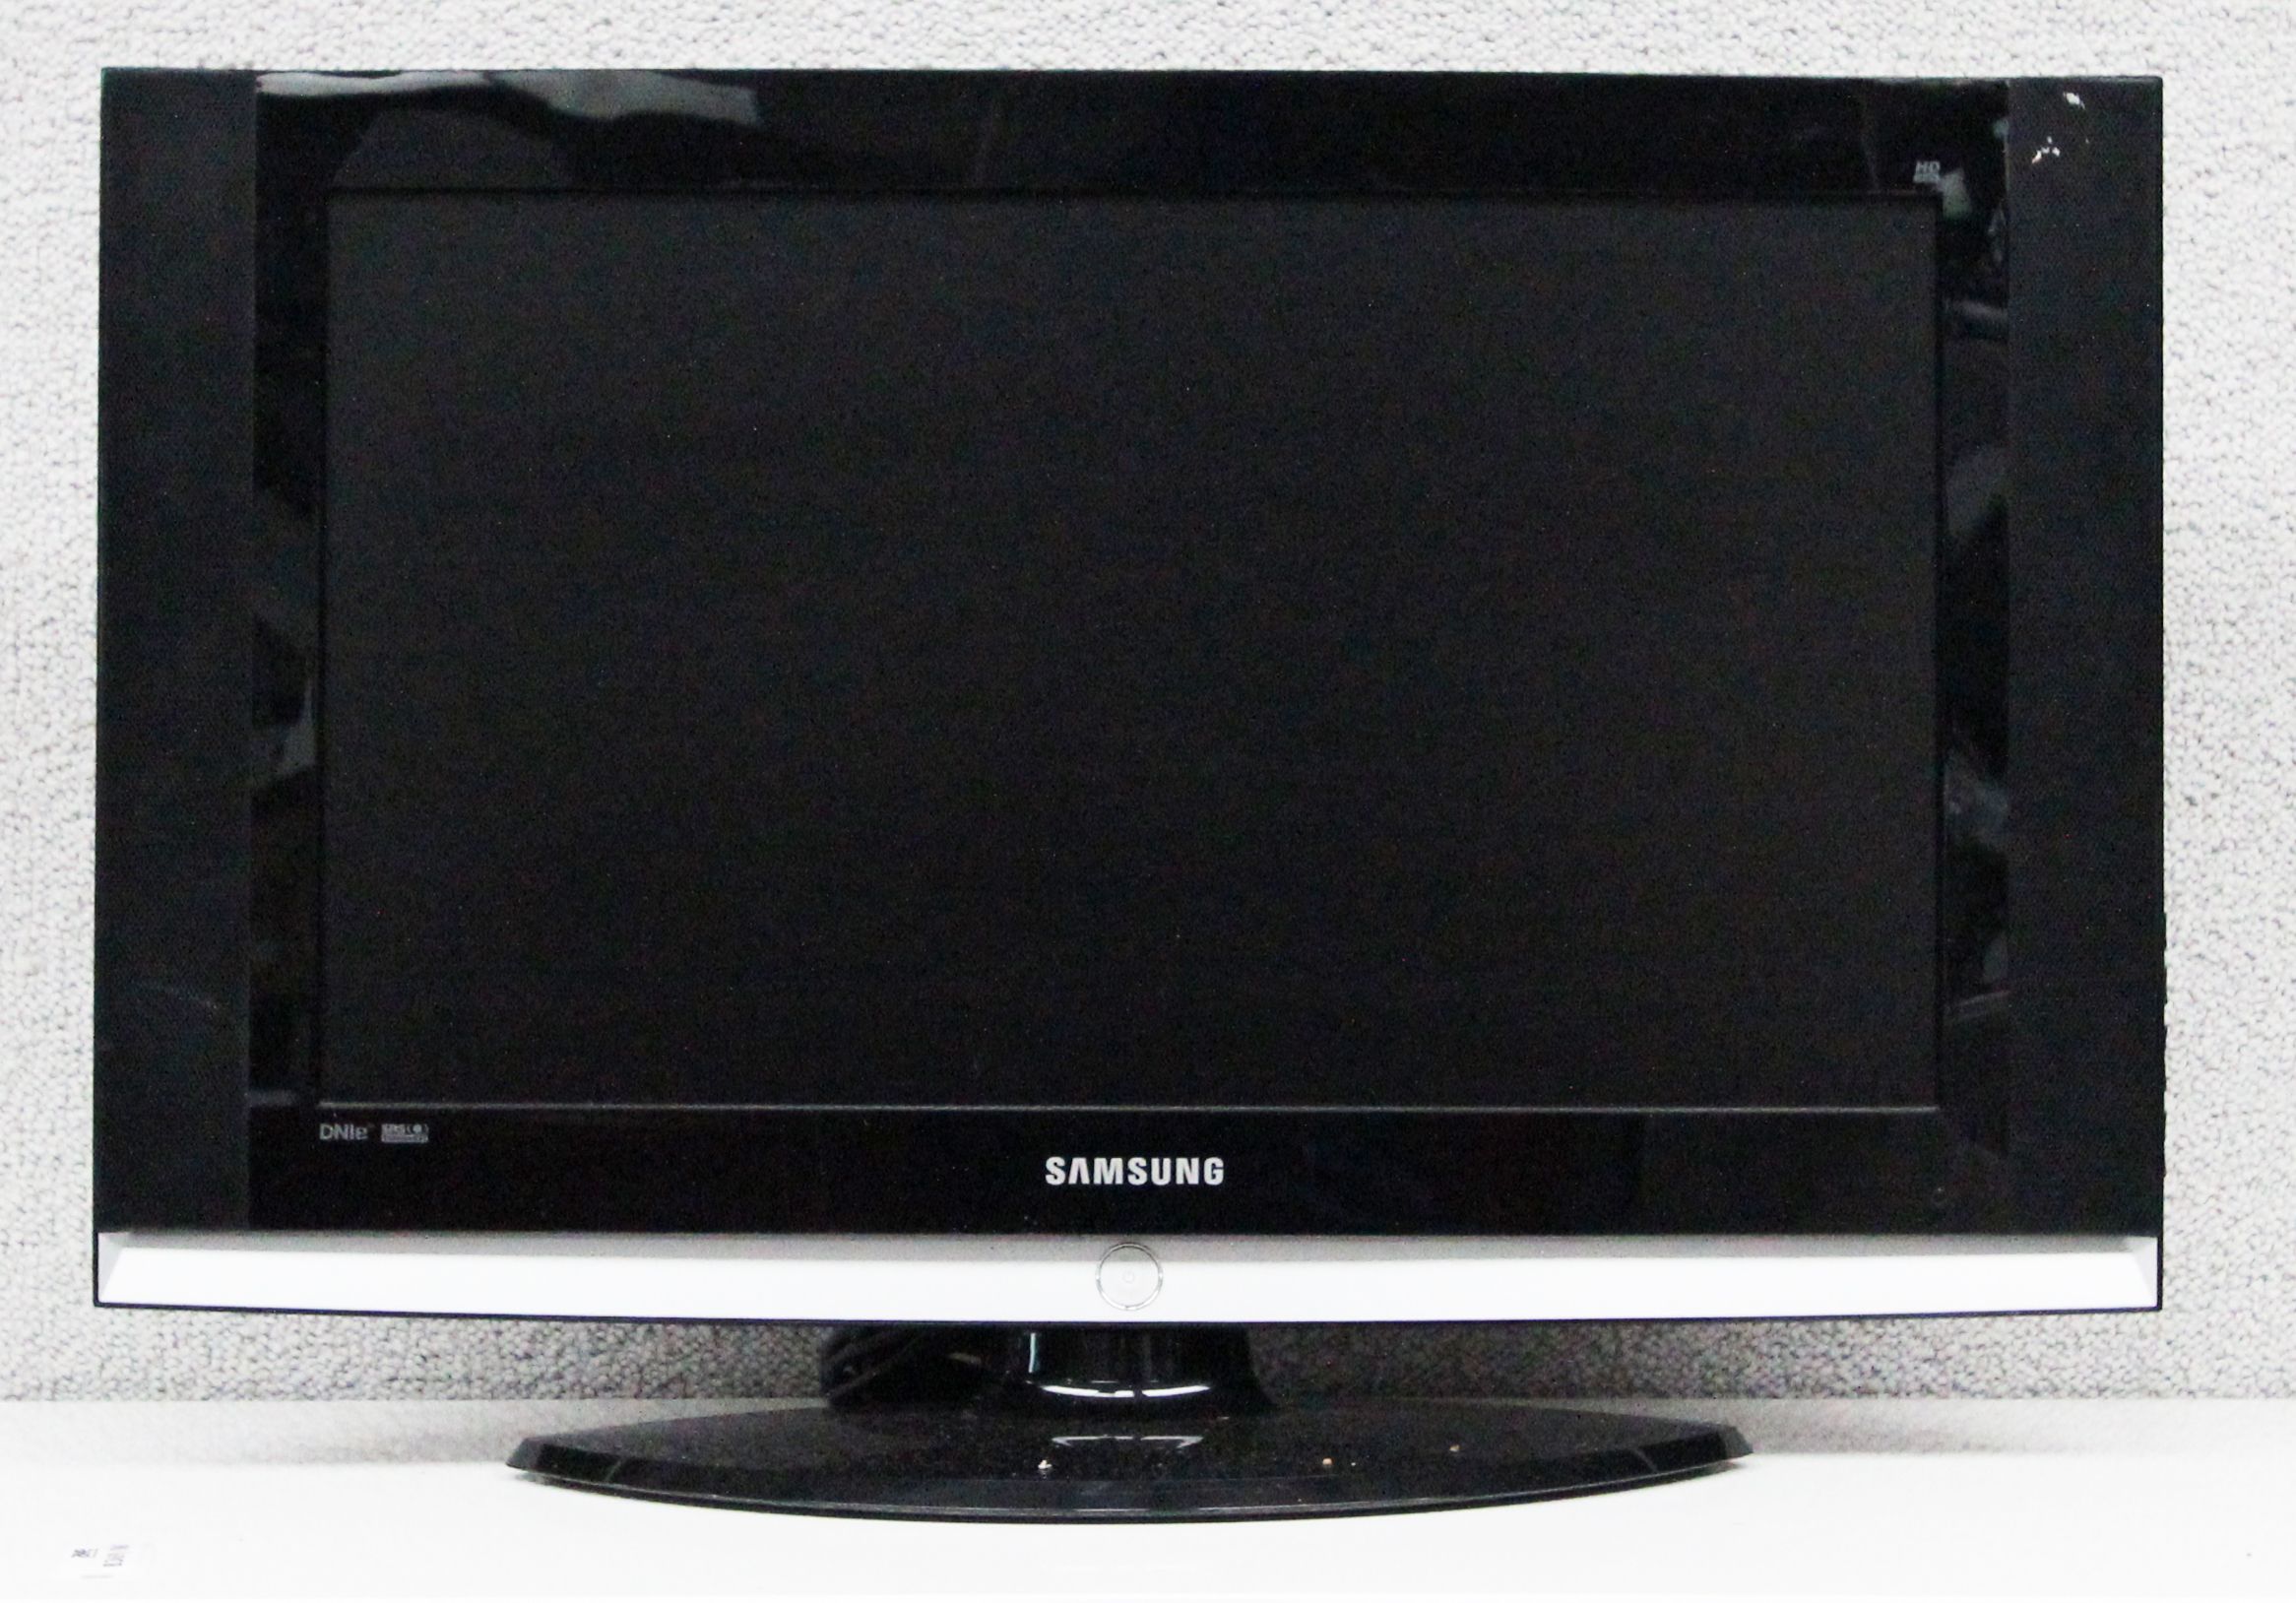 TELEVISEUR DE MARQUE SAMSUNG. MODELE LE27S71B. ECRAN HD LCD DE 27 POUCES. SUR PIED. 1 UNITE.